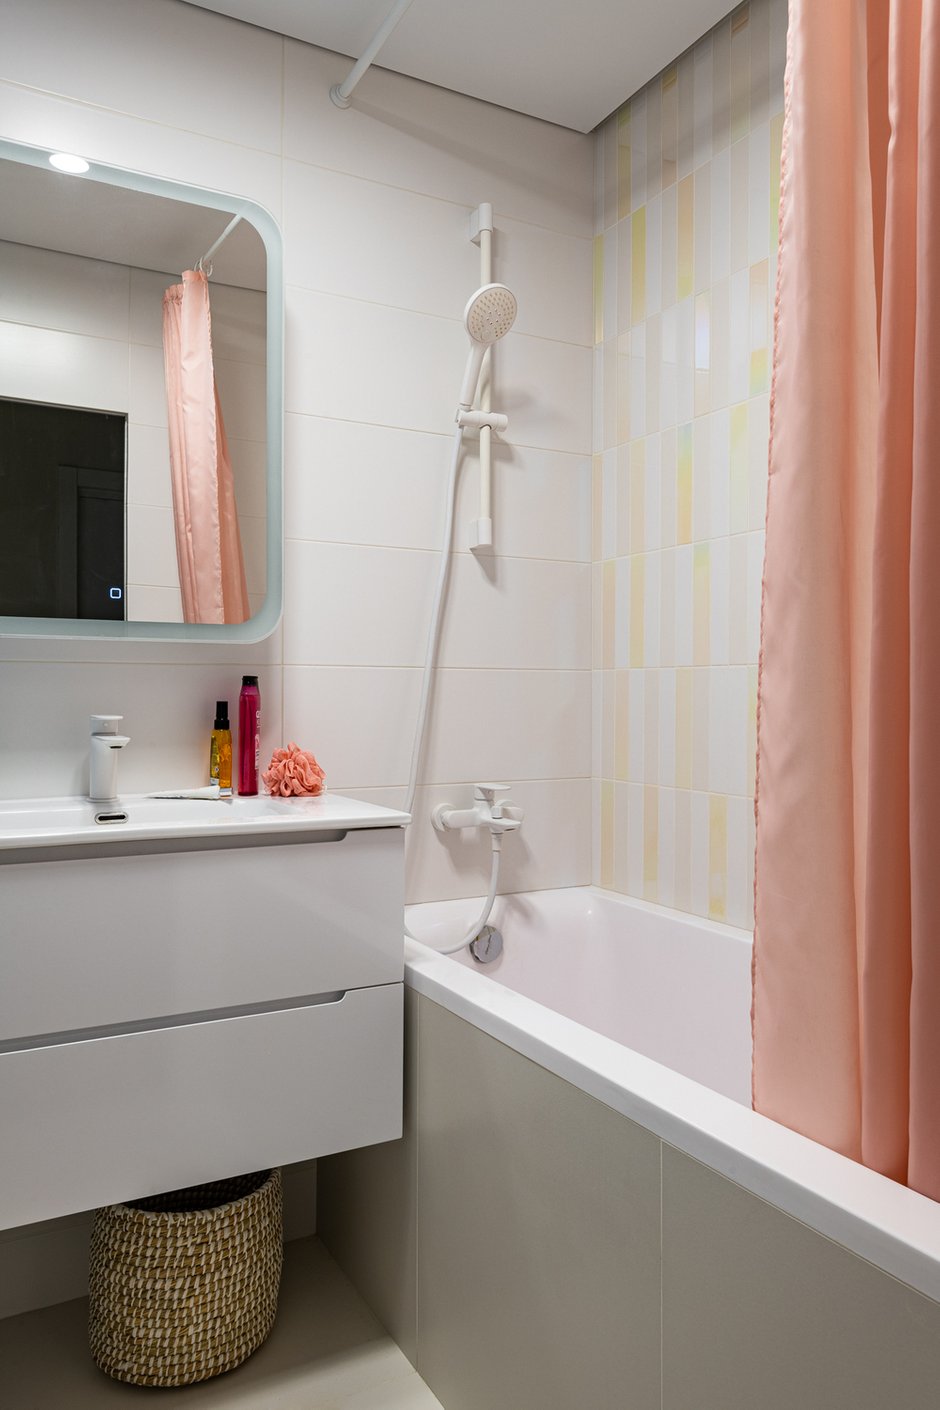 В ванной прослеживается такая же идея, как и во всей квартире: светлые стены и яркие акценты, здесь это голубой короб с коммуникациями и голографическая плитка над ванной.